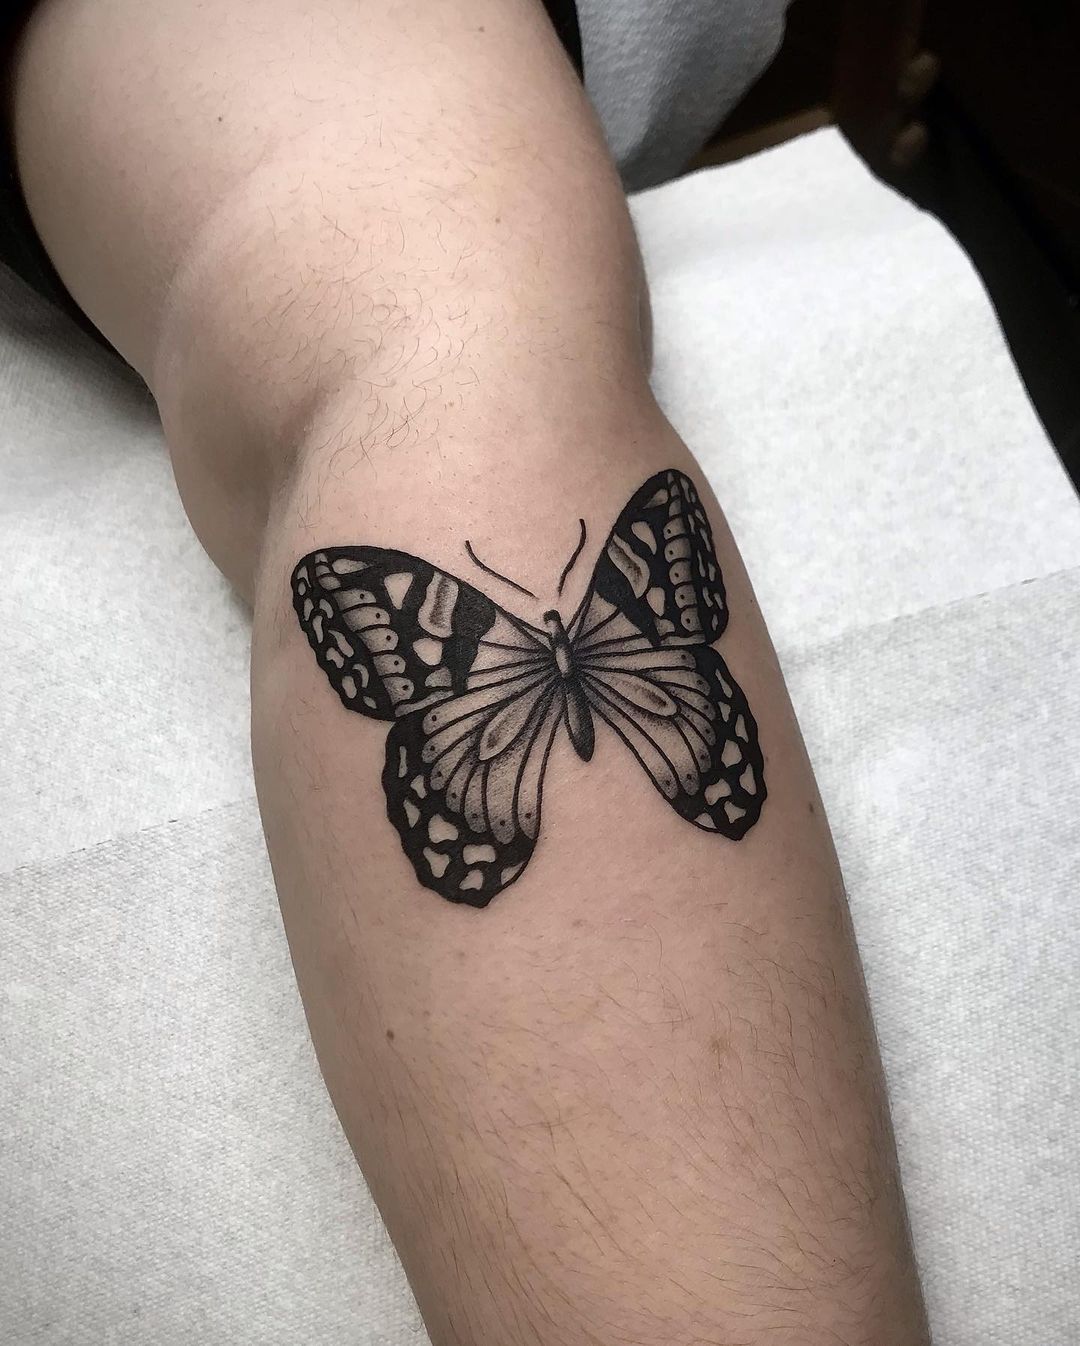 Butterfly tattoo by romu.grn